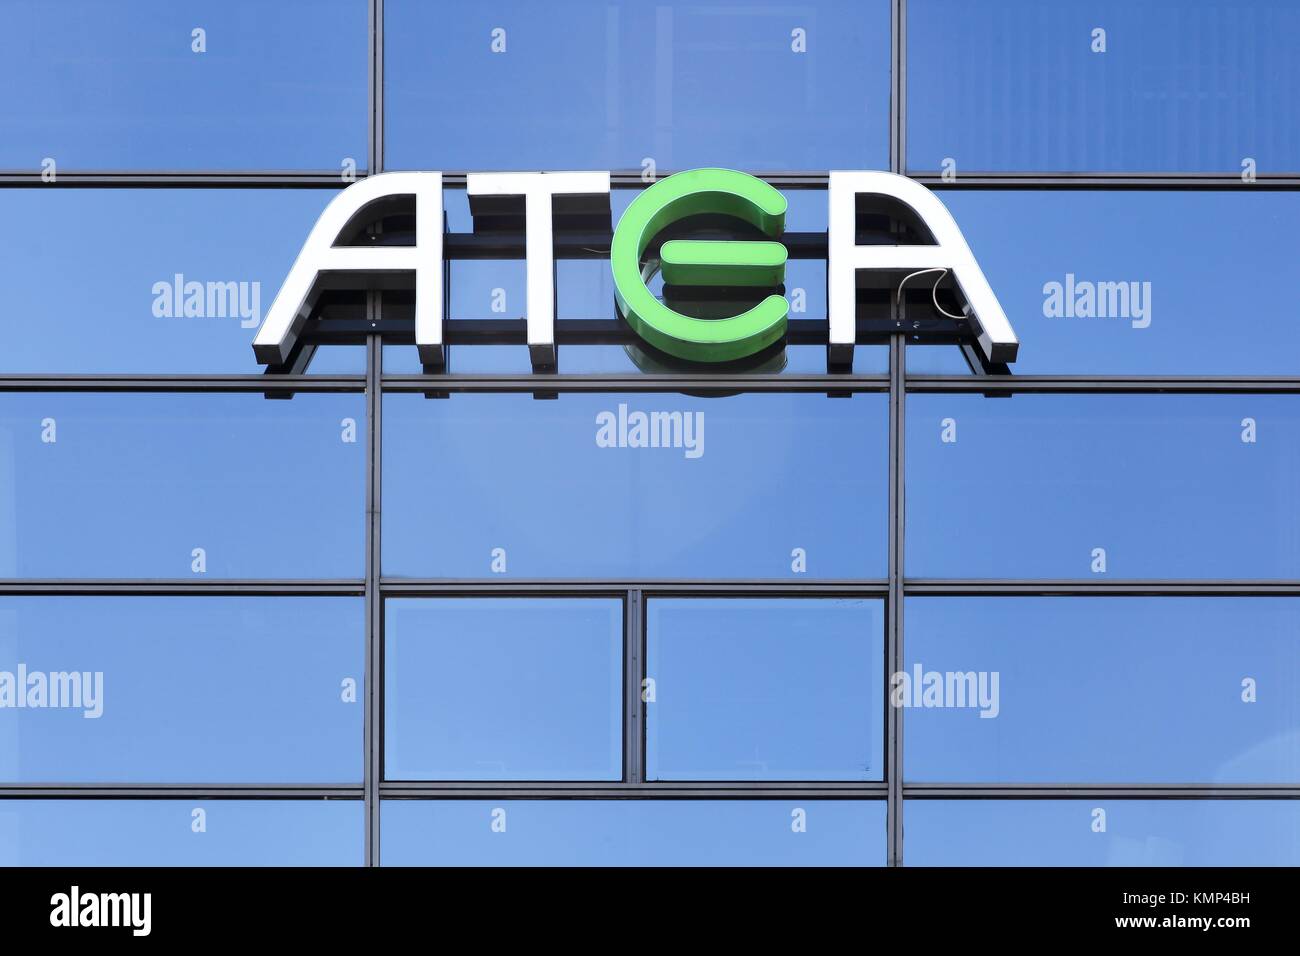 Ballerup, Danemark - 10 septembre 2017 : Atea logo sur un mur. Ementor Atea, précédemment, est une société de l'infrastructure nordique Banque D'Images